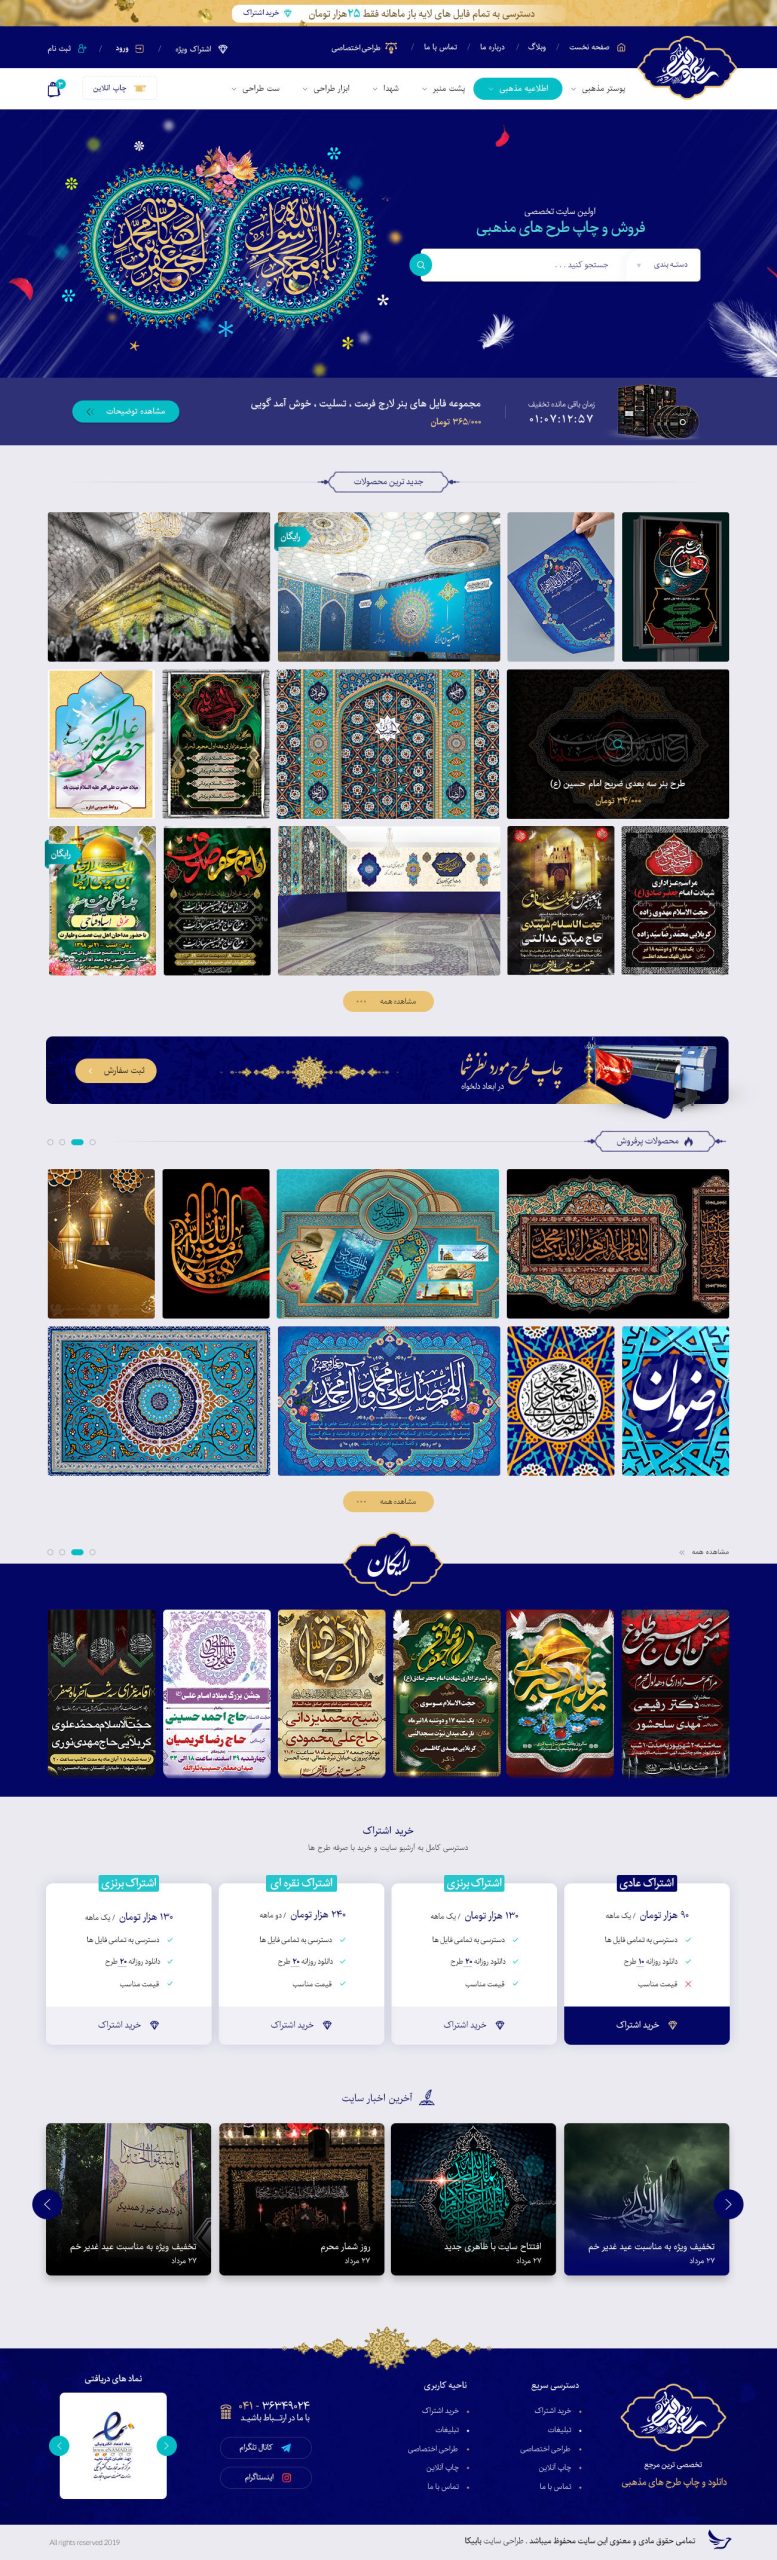 طراحی گرافیک سایت فایل مذهبی FileMazhabi